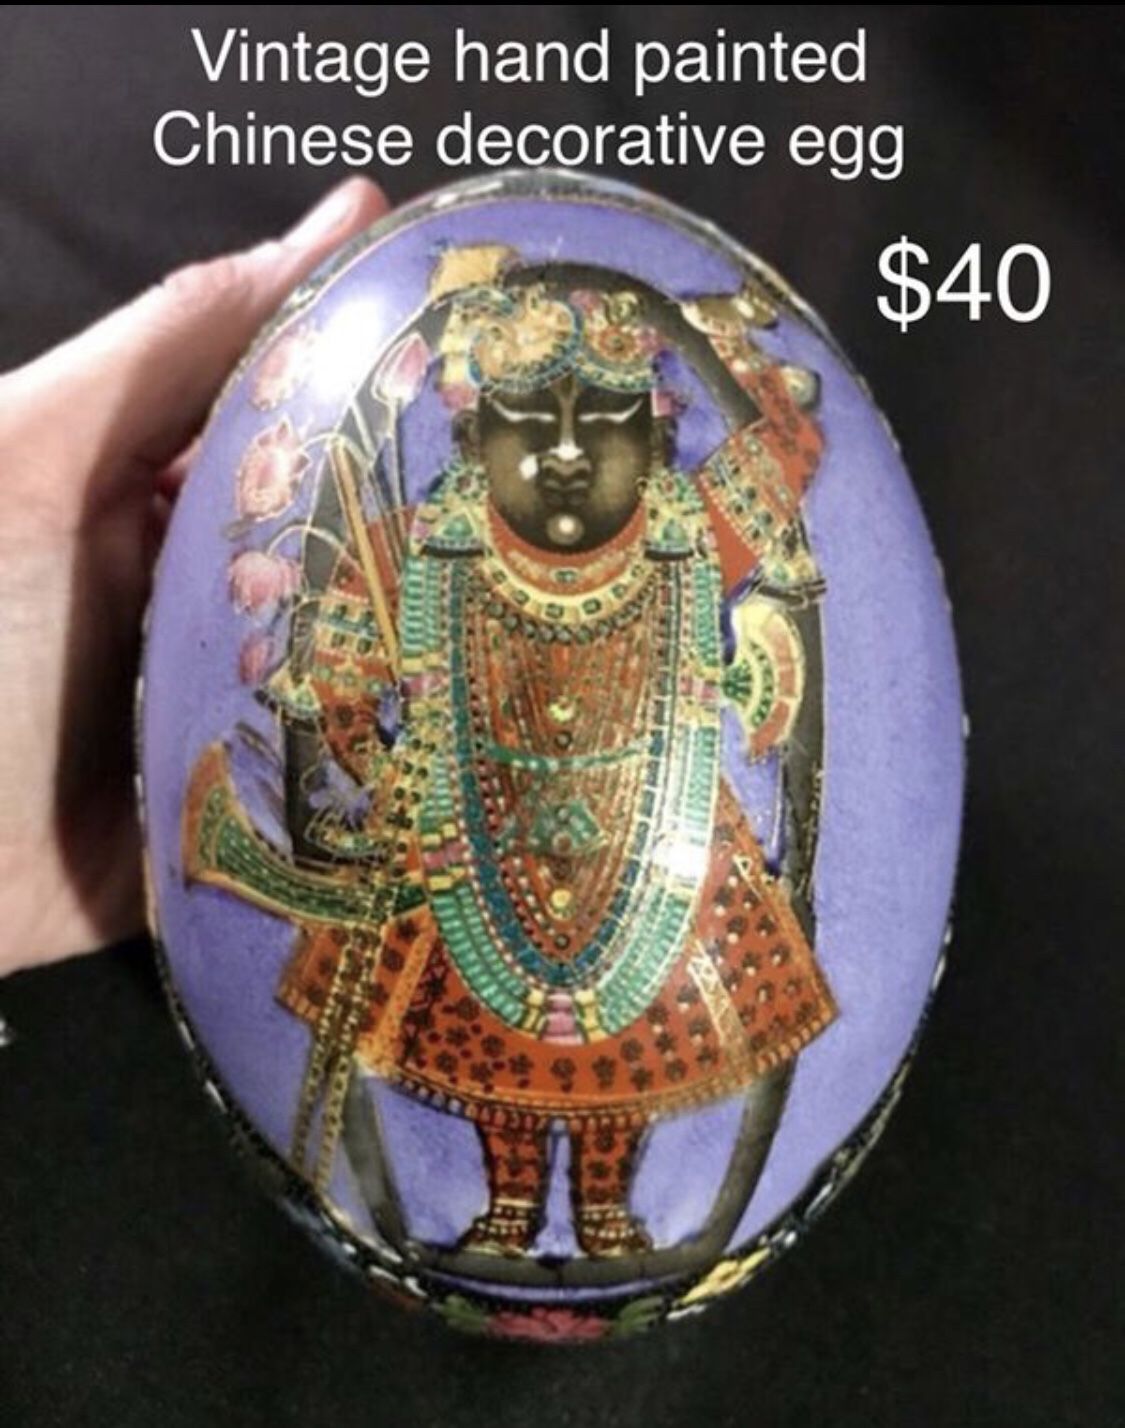 Antique hand painted porcelain decorative egg